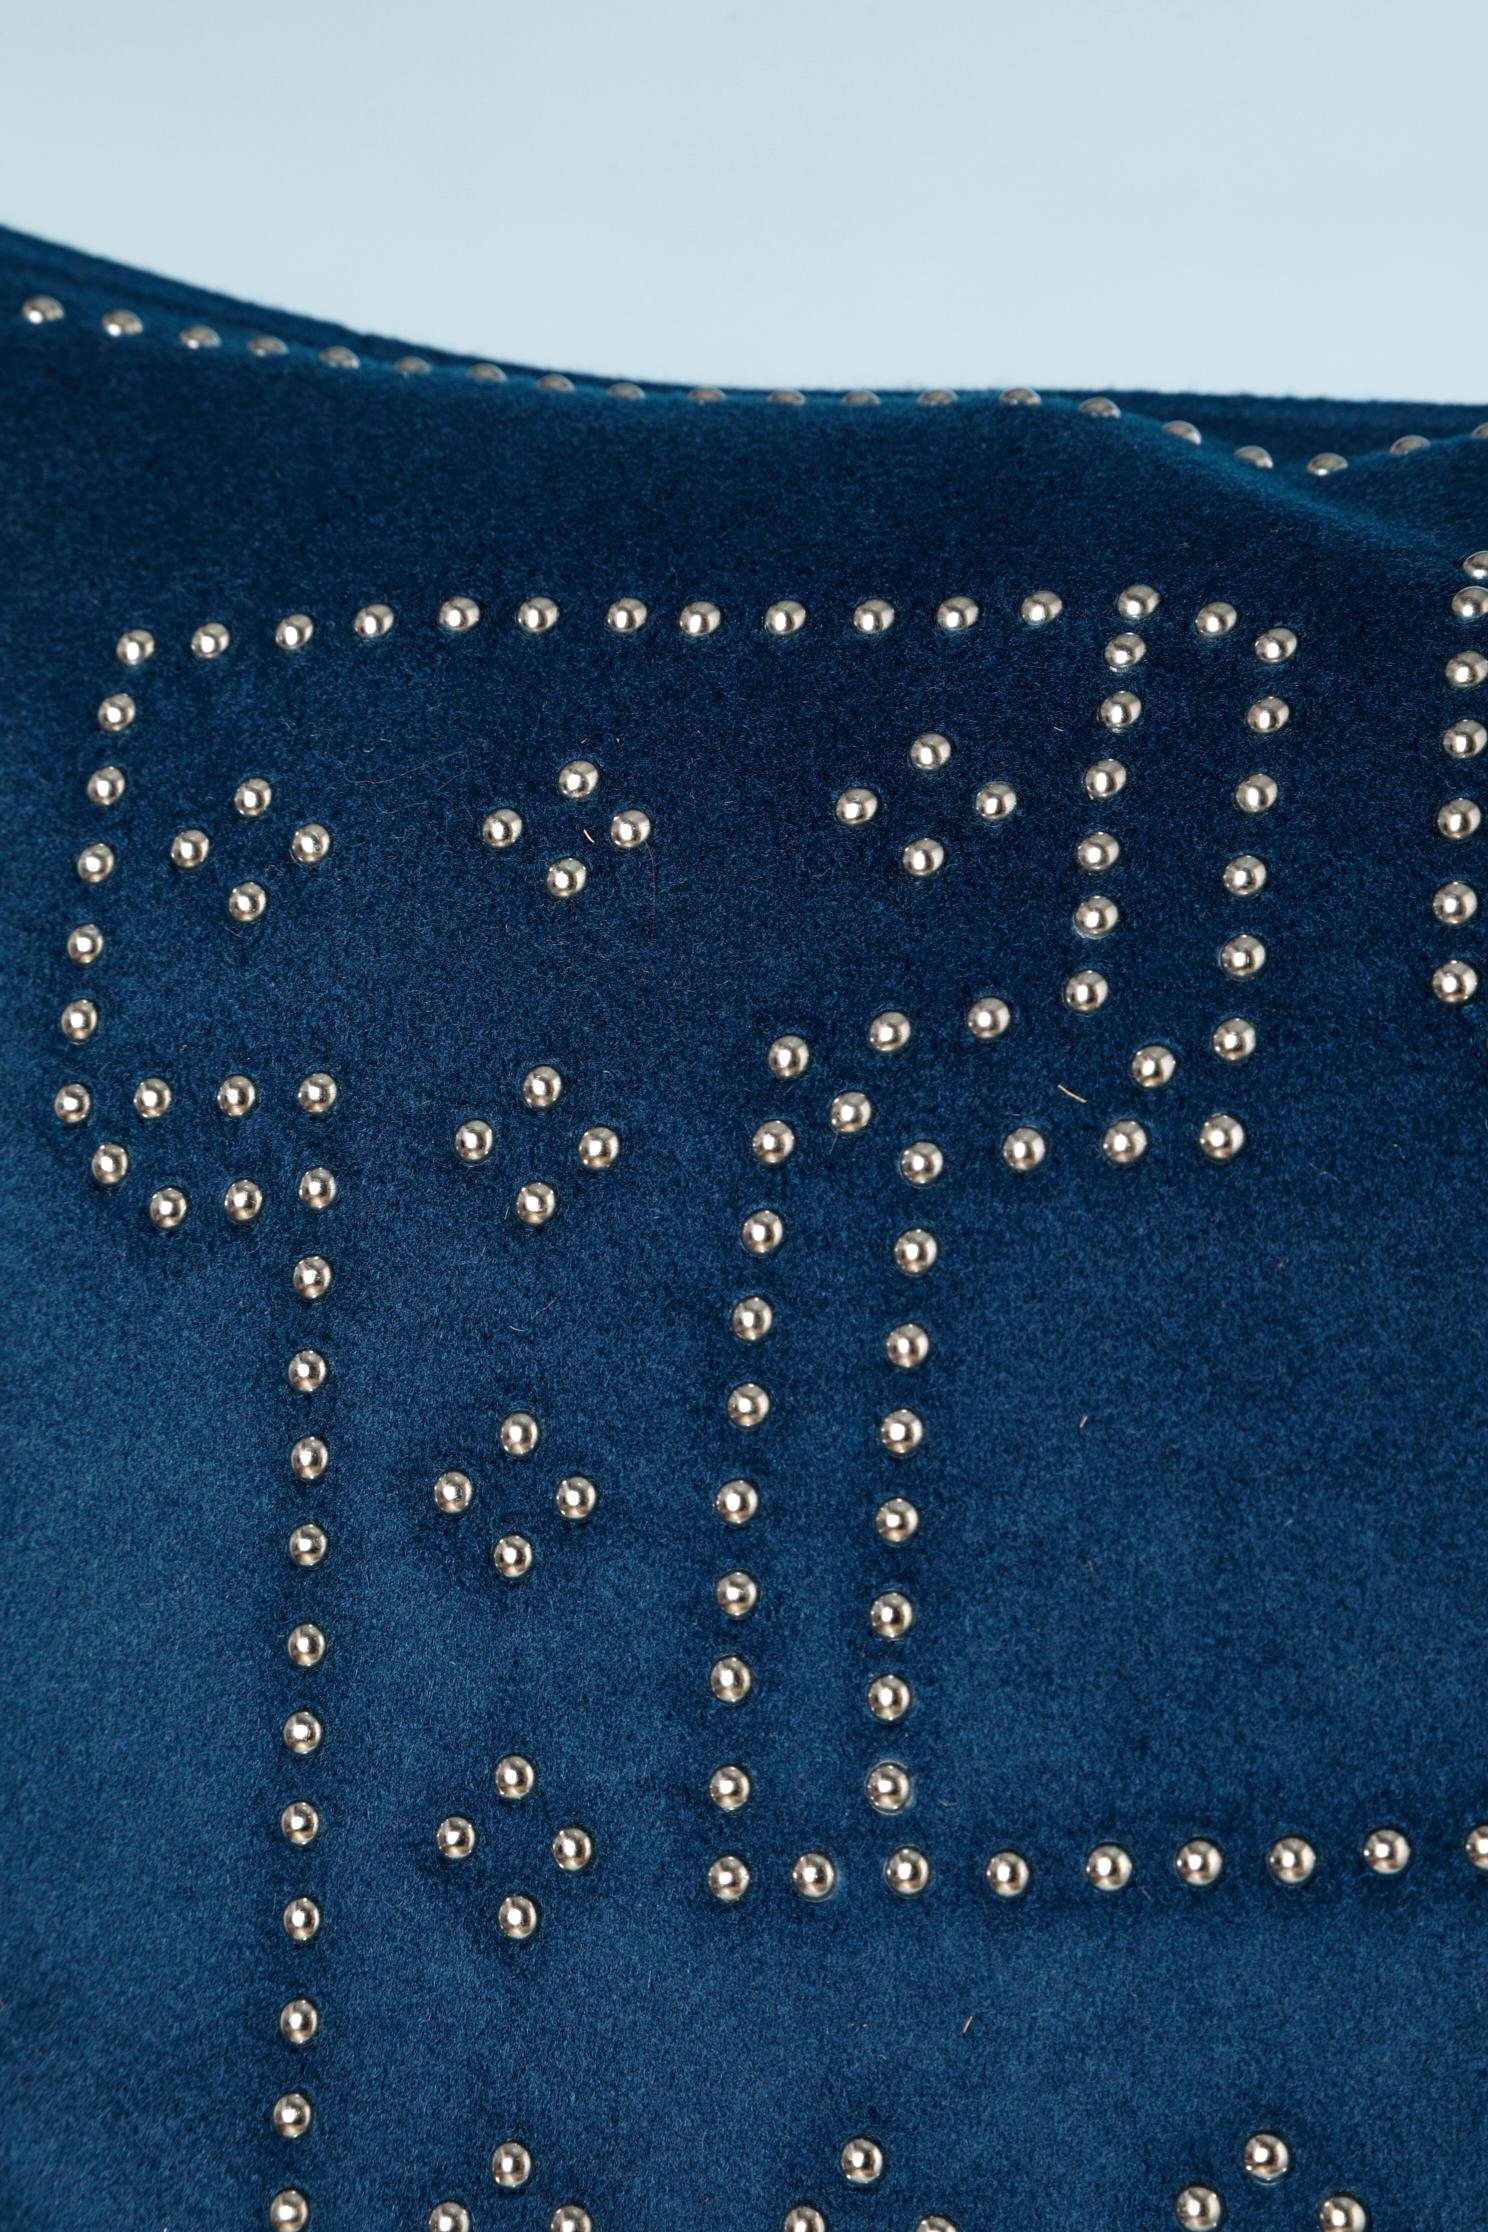 Boîtier d'oreiller en cachemire bleu nuit avec clous métalliques « H ».
TAILLE 48 cm X 48 cm 
10 pièces disponibles de la même taille et de la même couleur